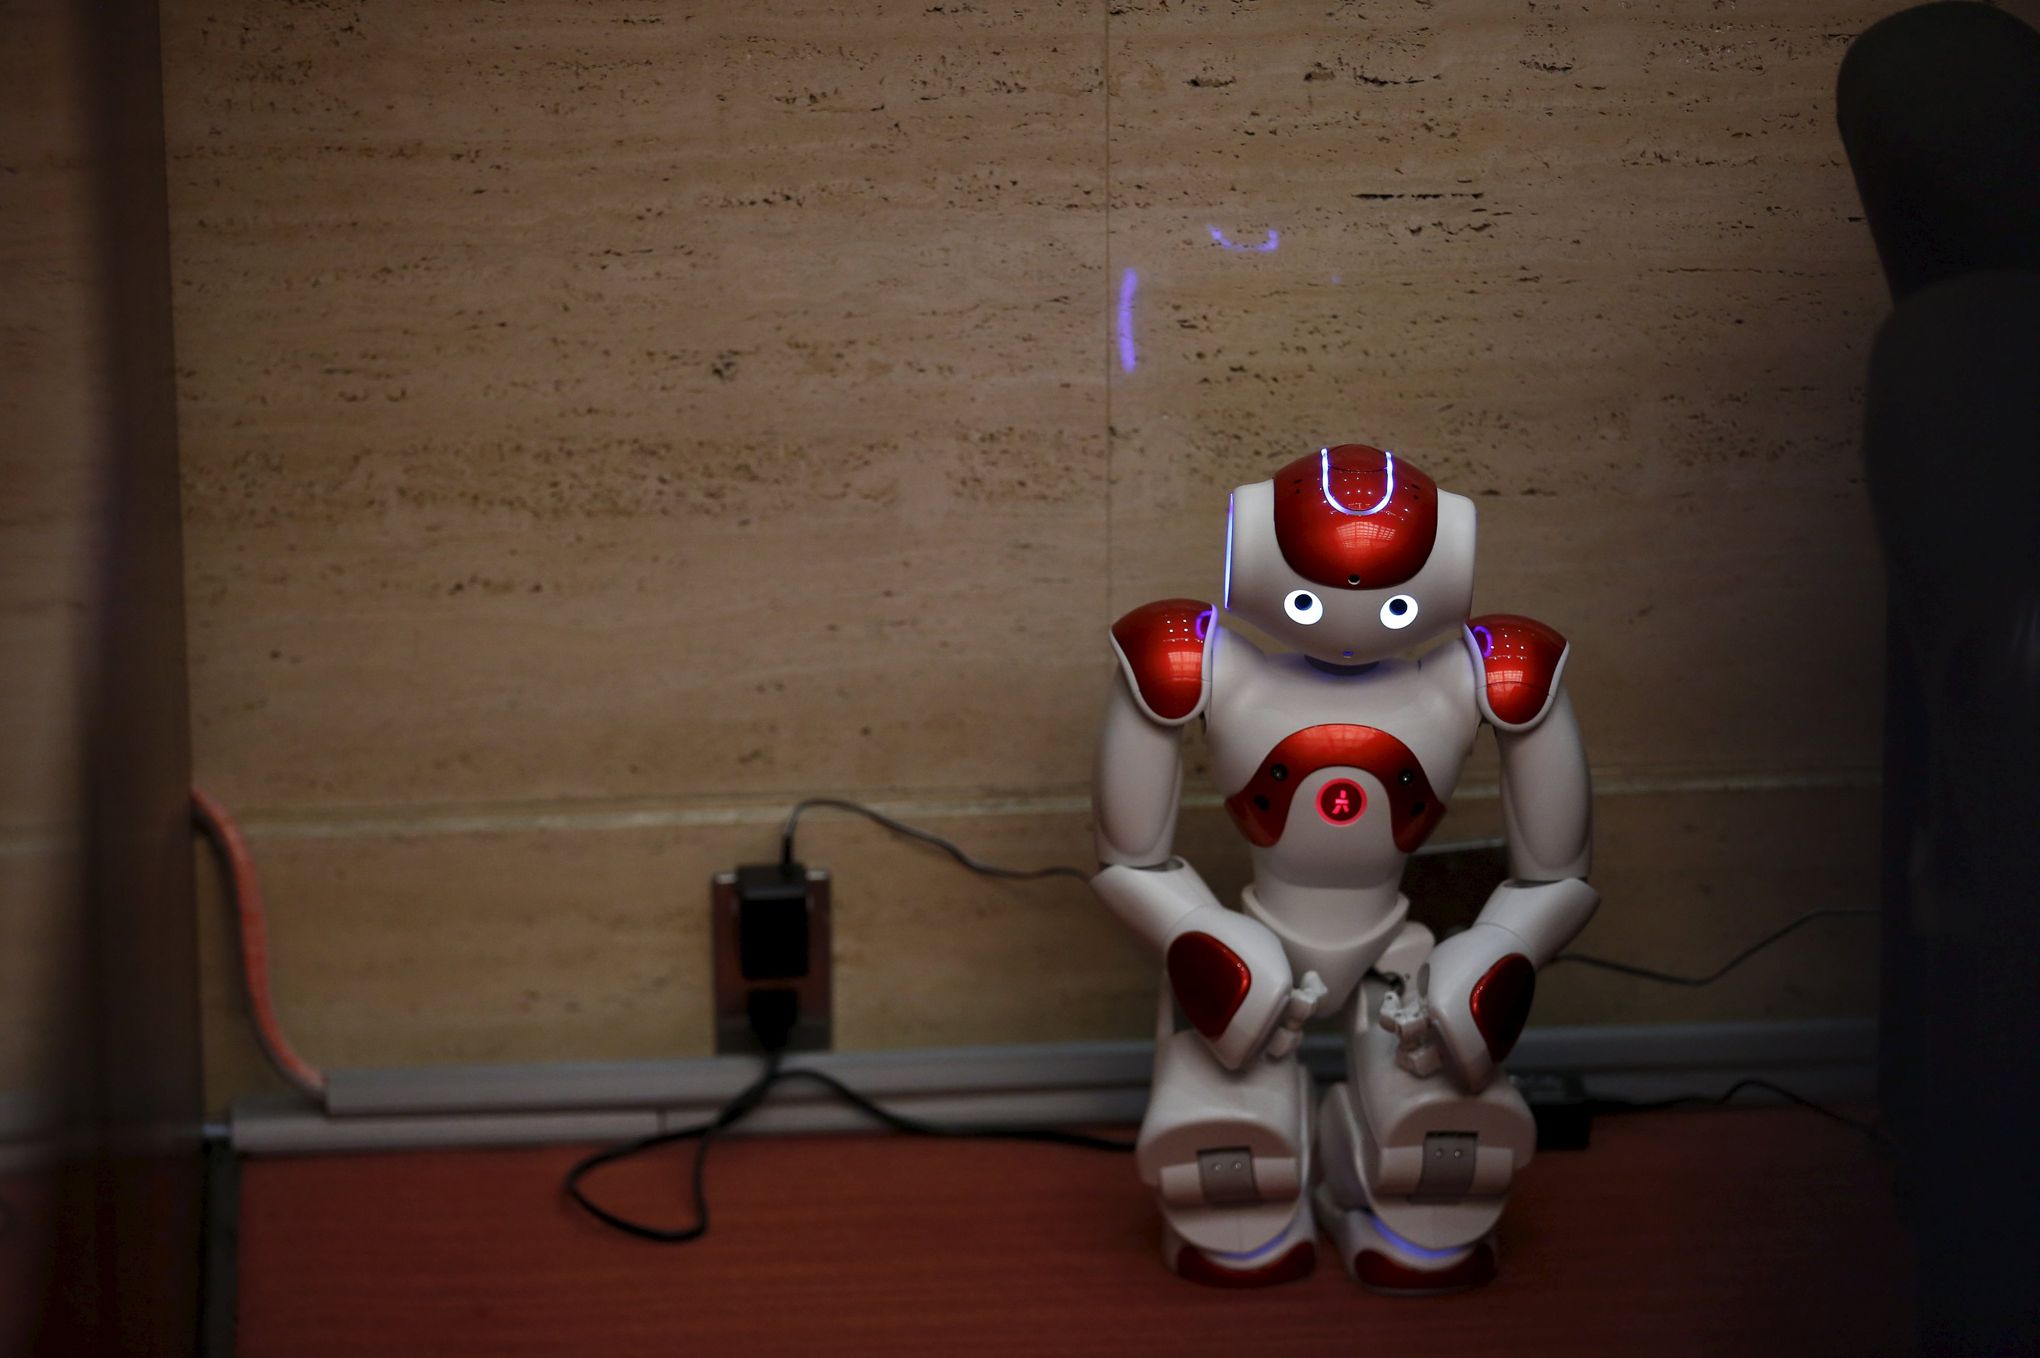 Les robots humanoïdes se font une place dans la maison